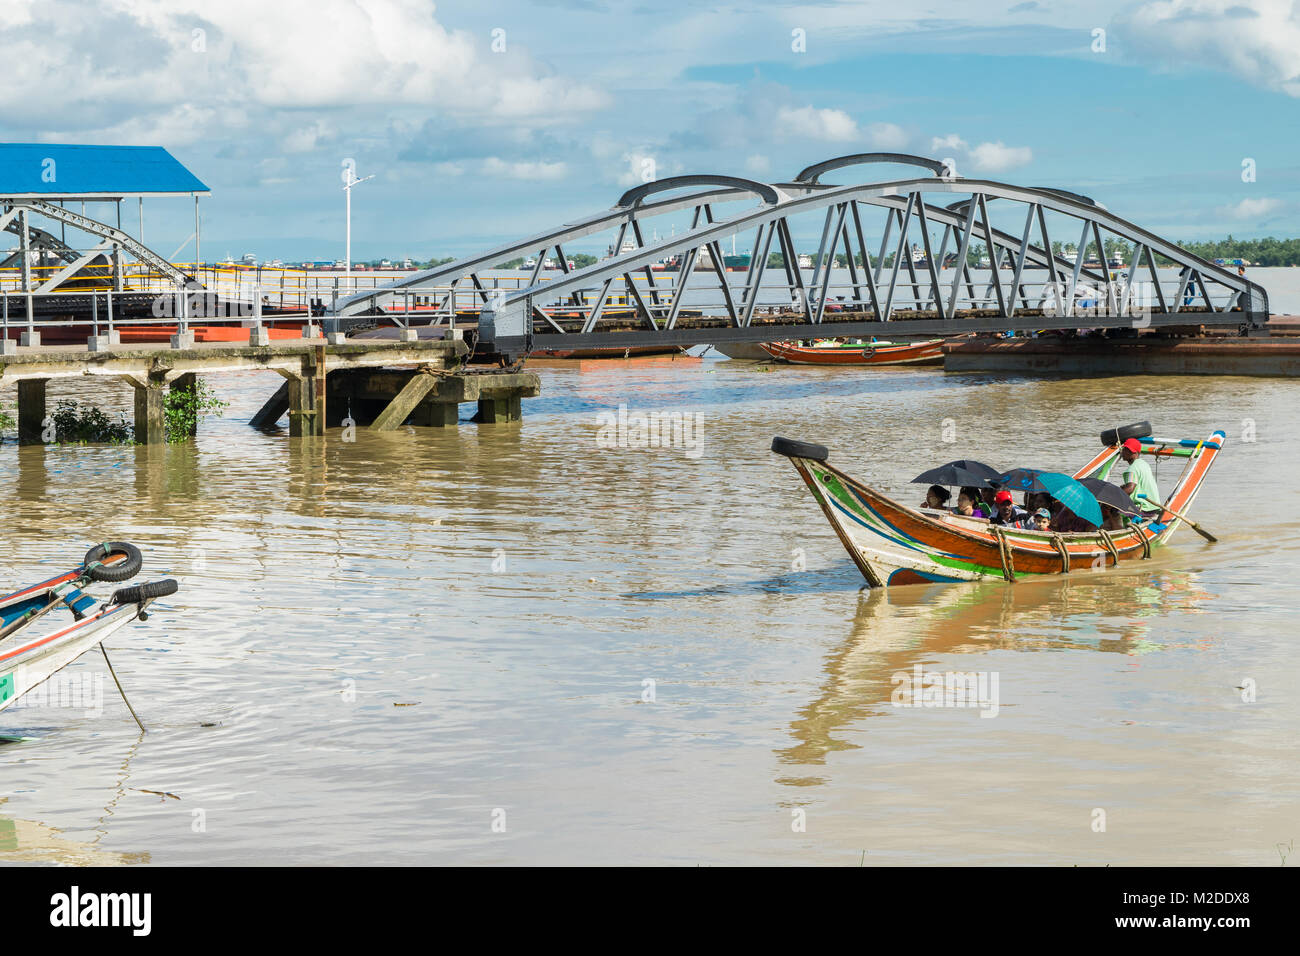 Una barca che arrivano al molo Botahtaung, che trasportano passeggeri birmano sul fiume Yangon. brown acqua di fiume, barche colorate, acqua pulita trasporti, Birmania Foto Stock